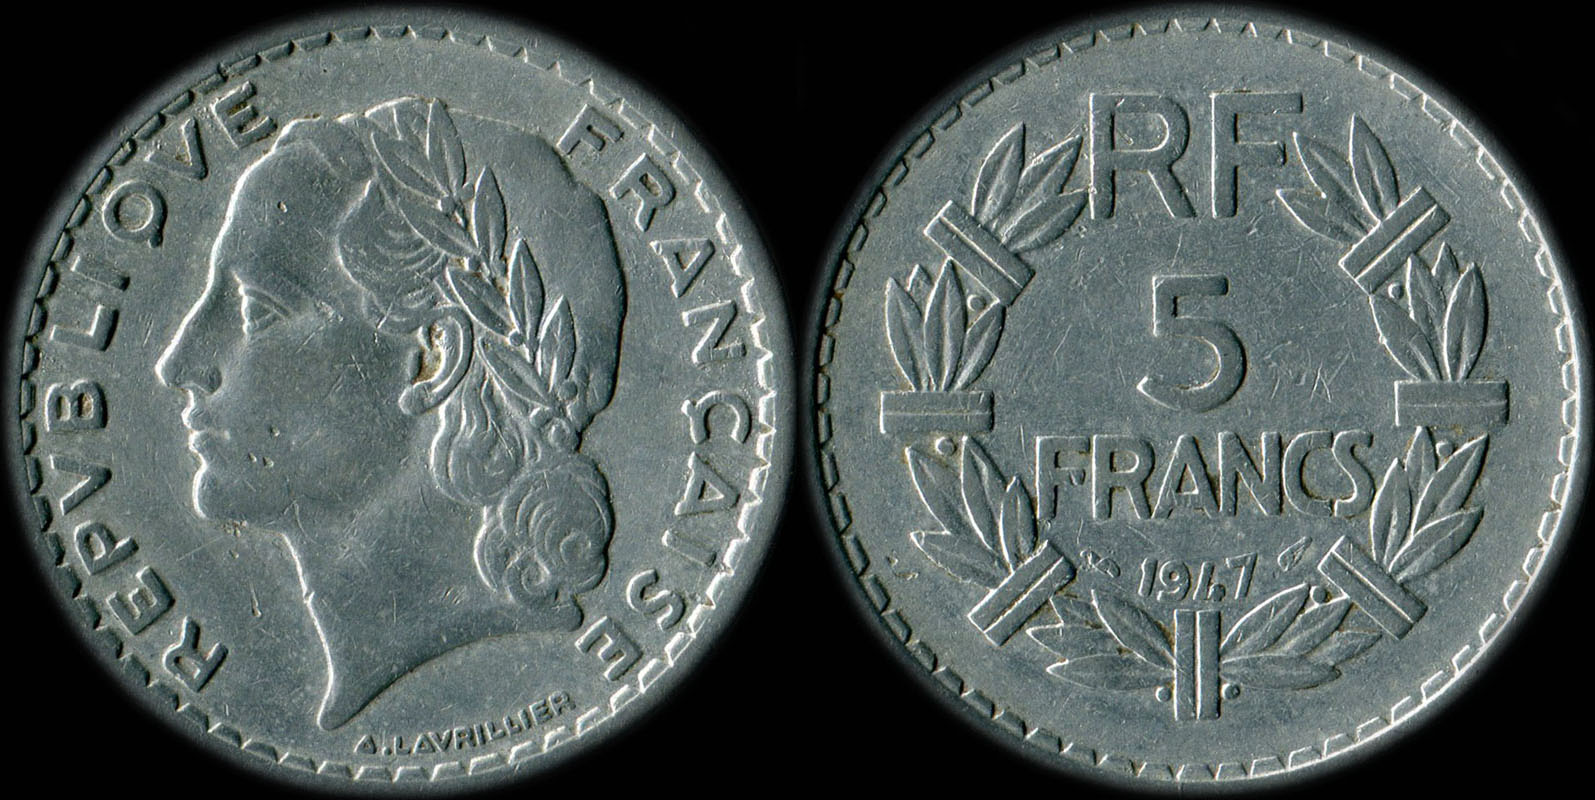 Pièce de 5 francs Lavrillier 1947 aluminium avec 9 fermé